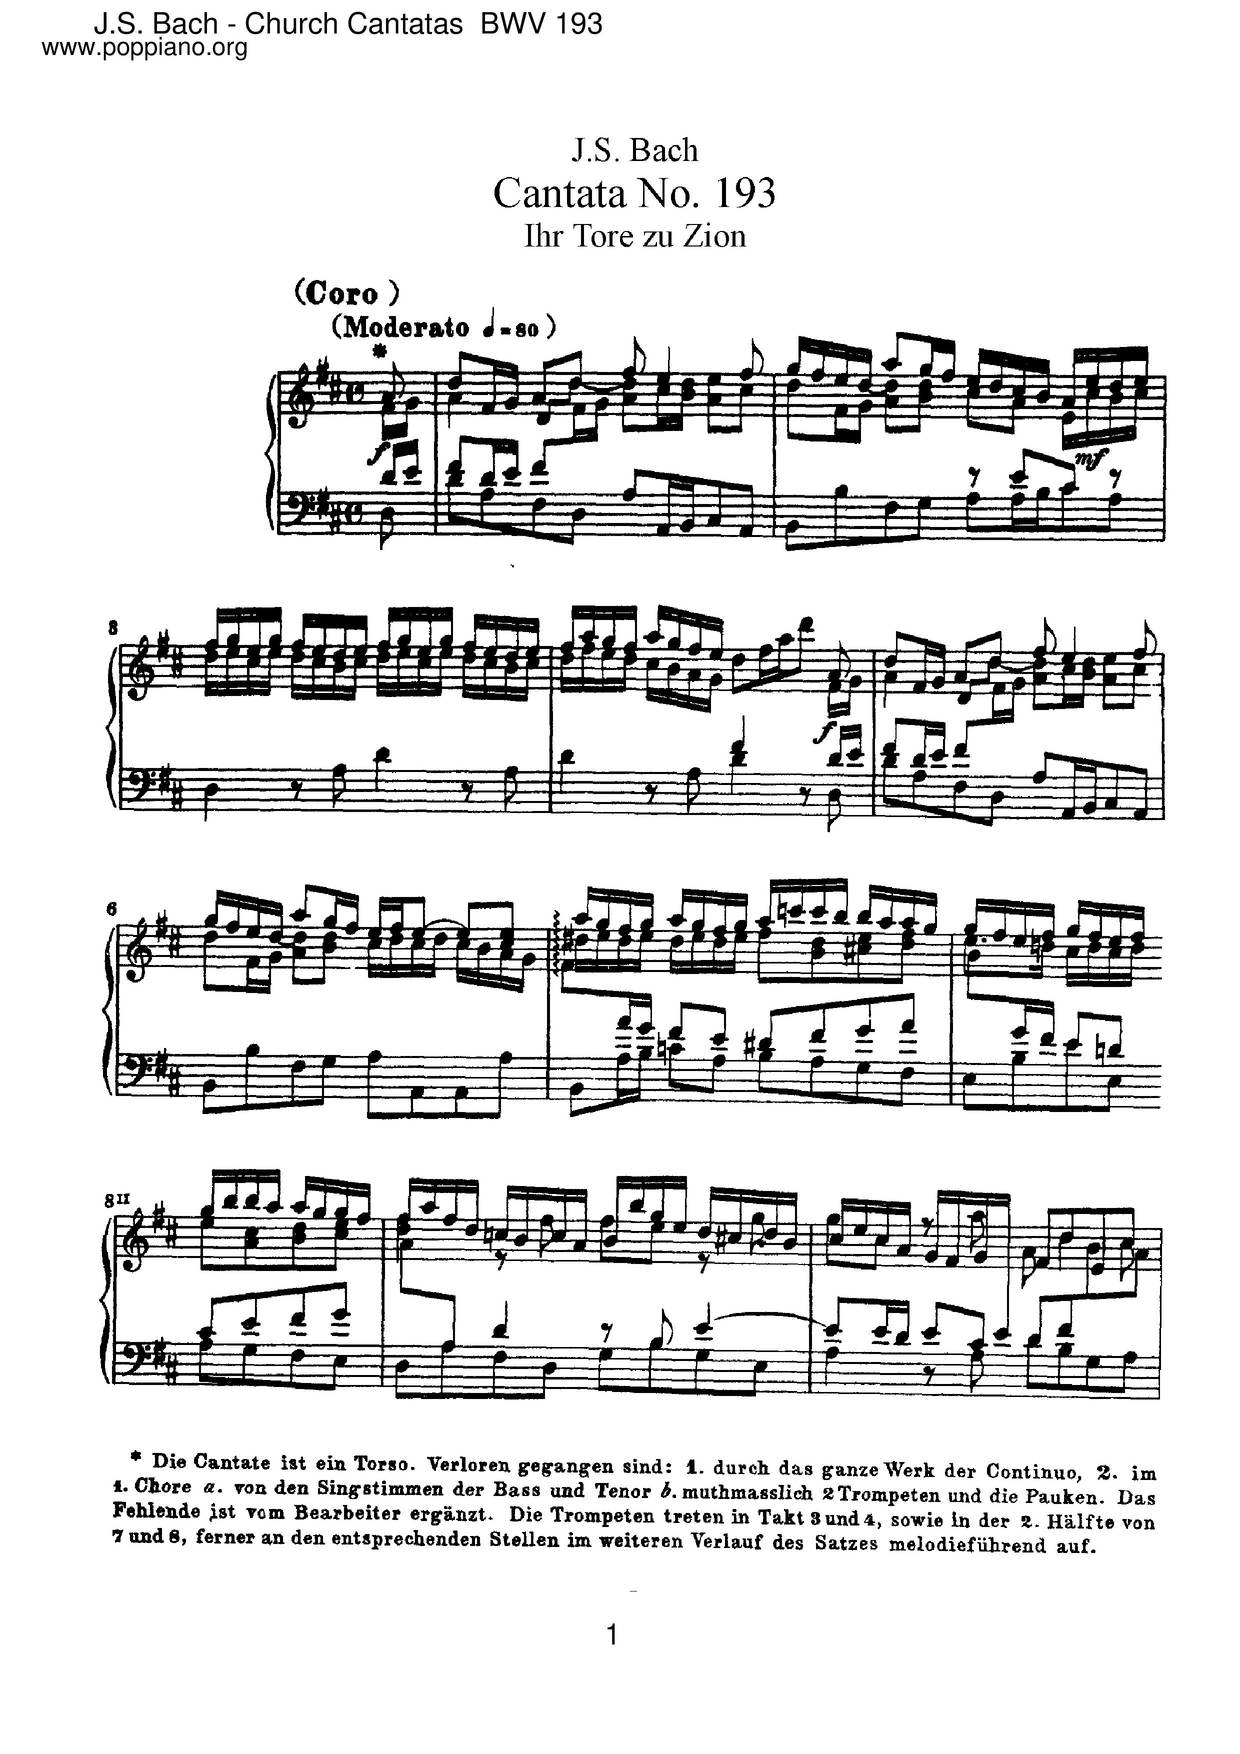 Ihr Tore Zu Zion, BWV 193 Score